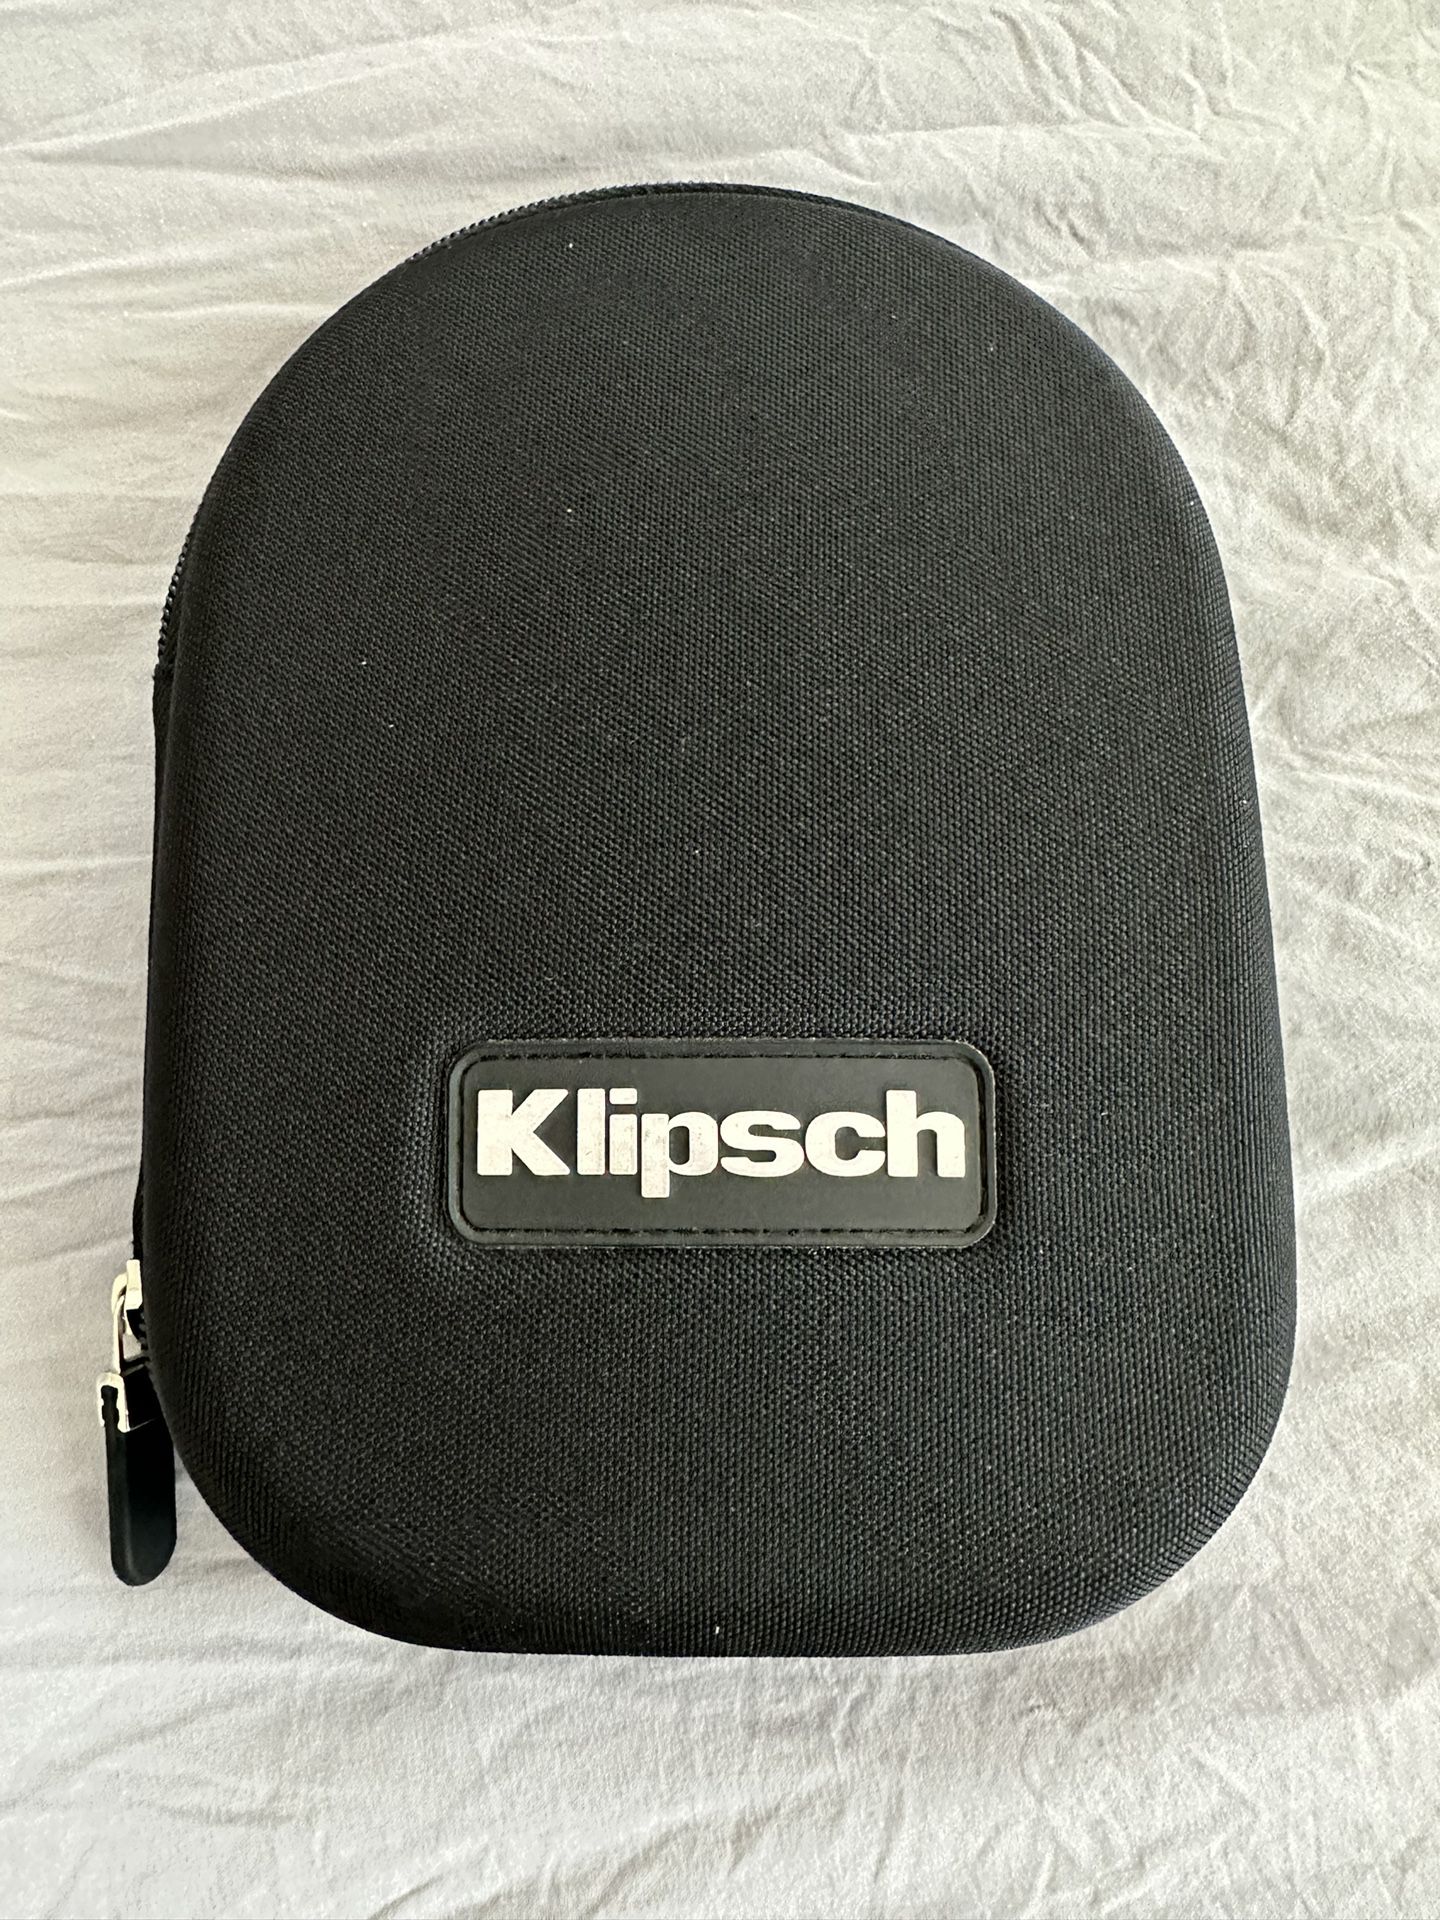 Klipsch Wired On Ear Headphones